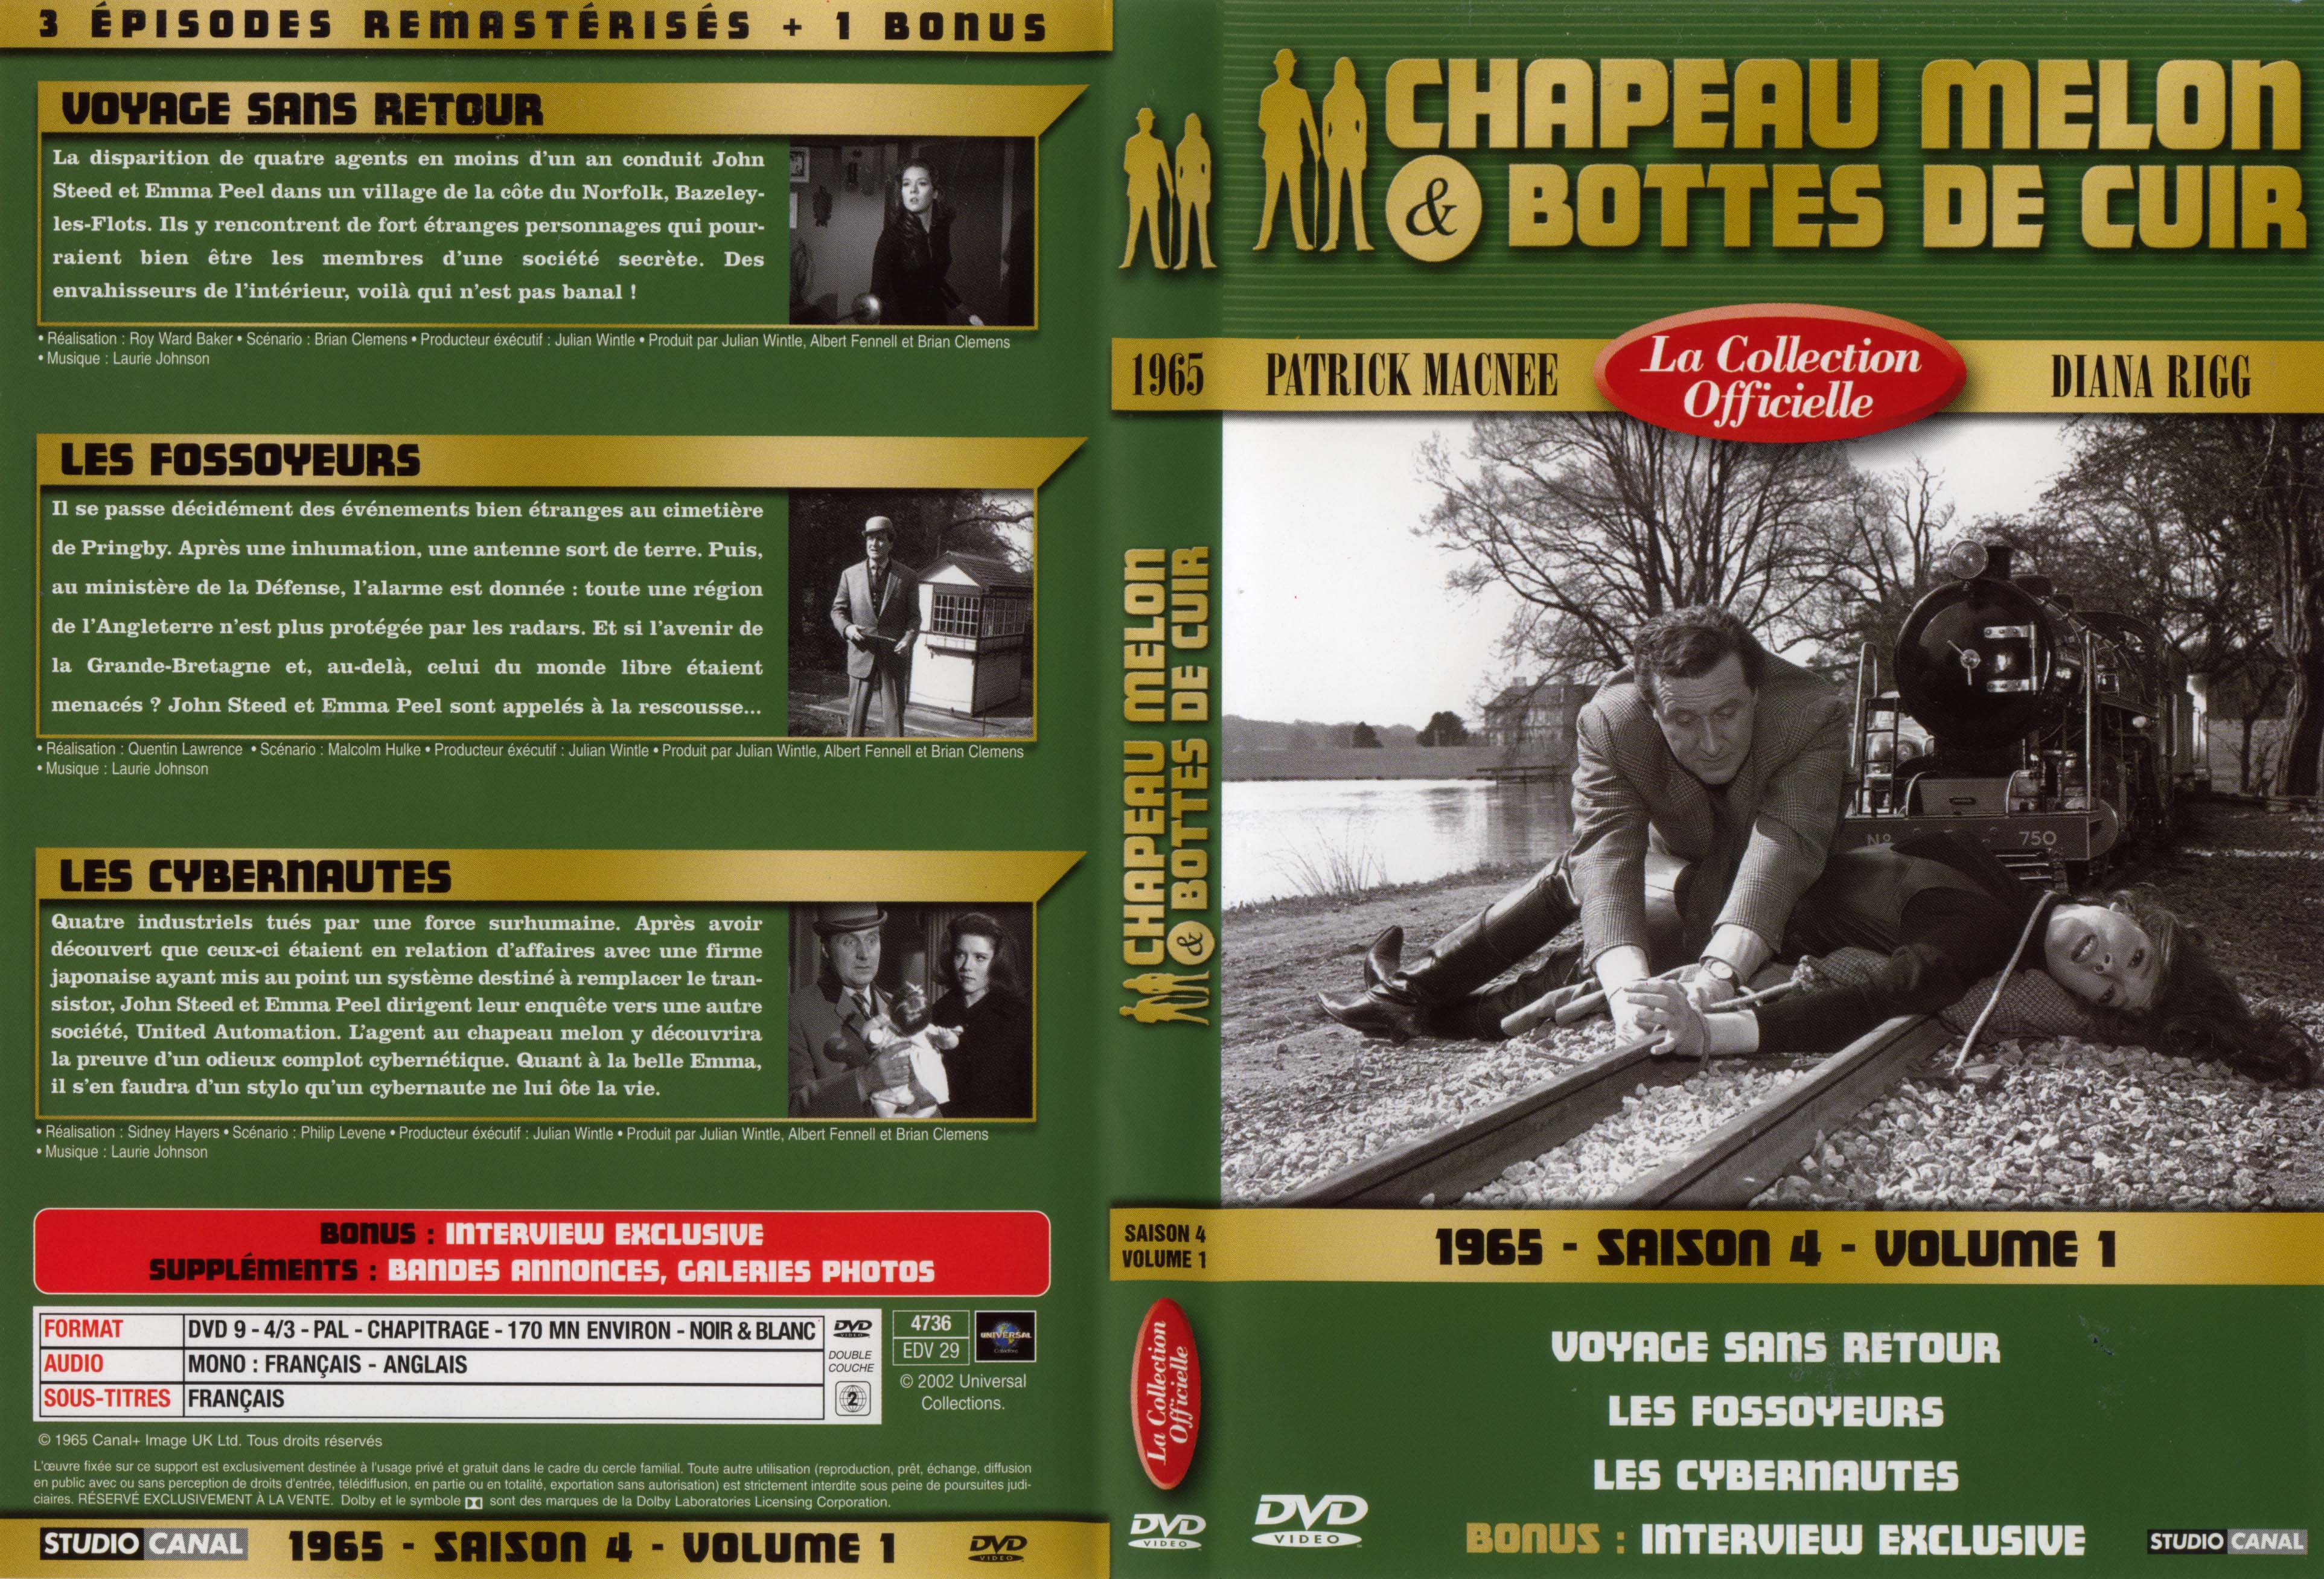 Jaquette DVD Chapeau melon et bottes de cuir 1965 saison 4 vol 1